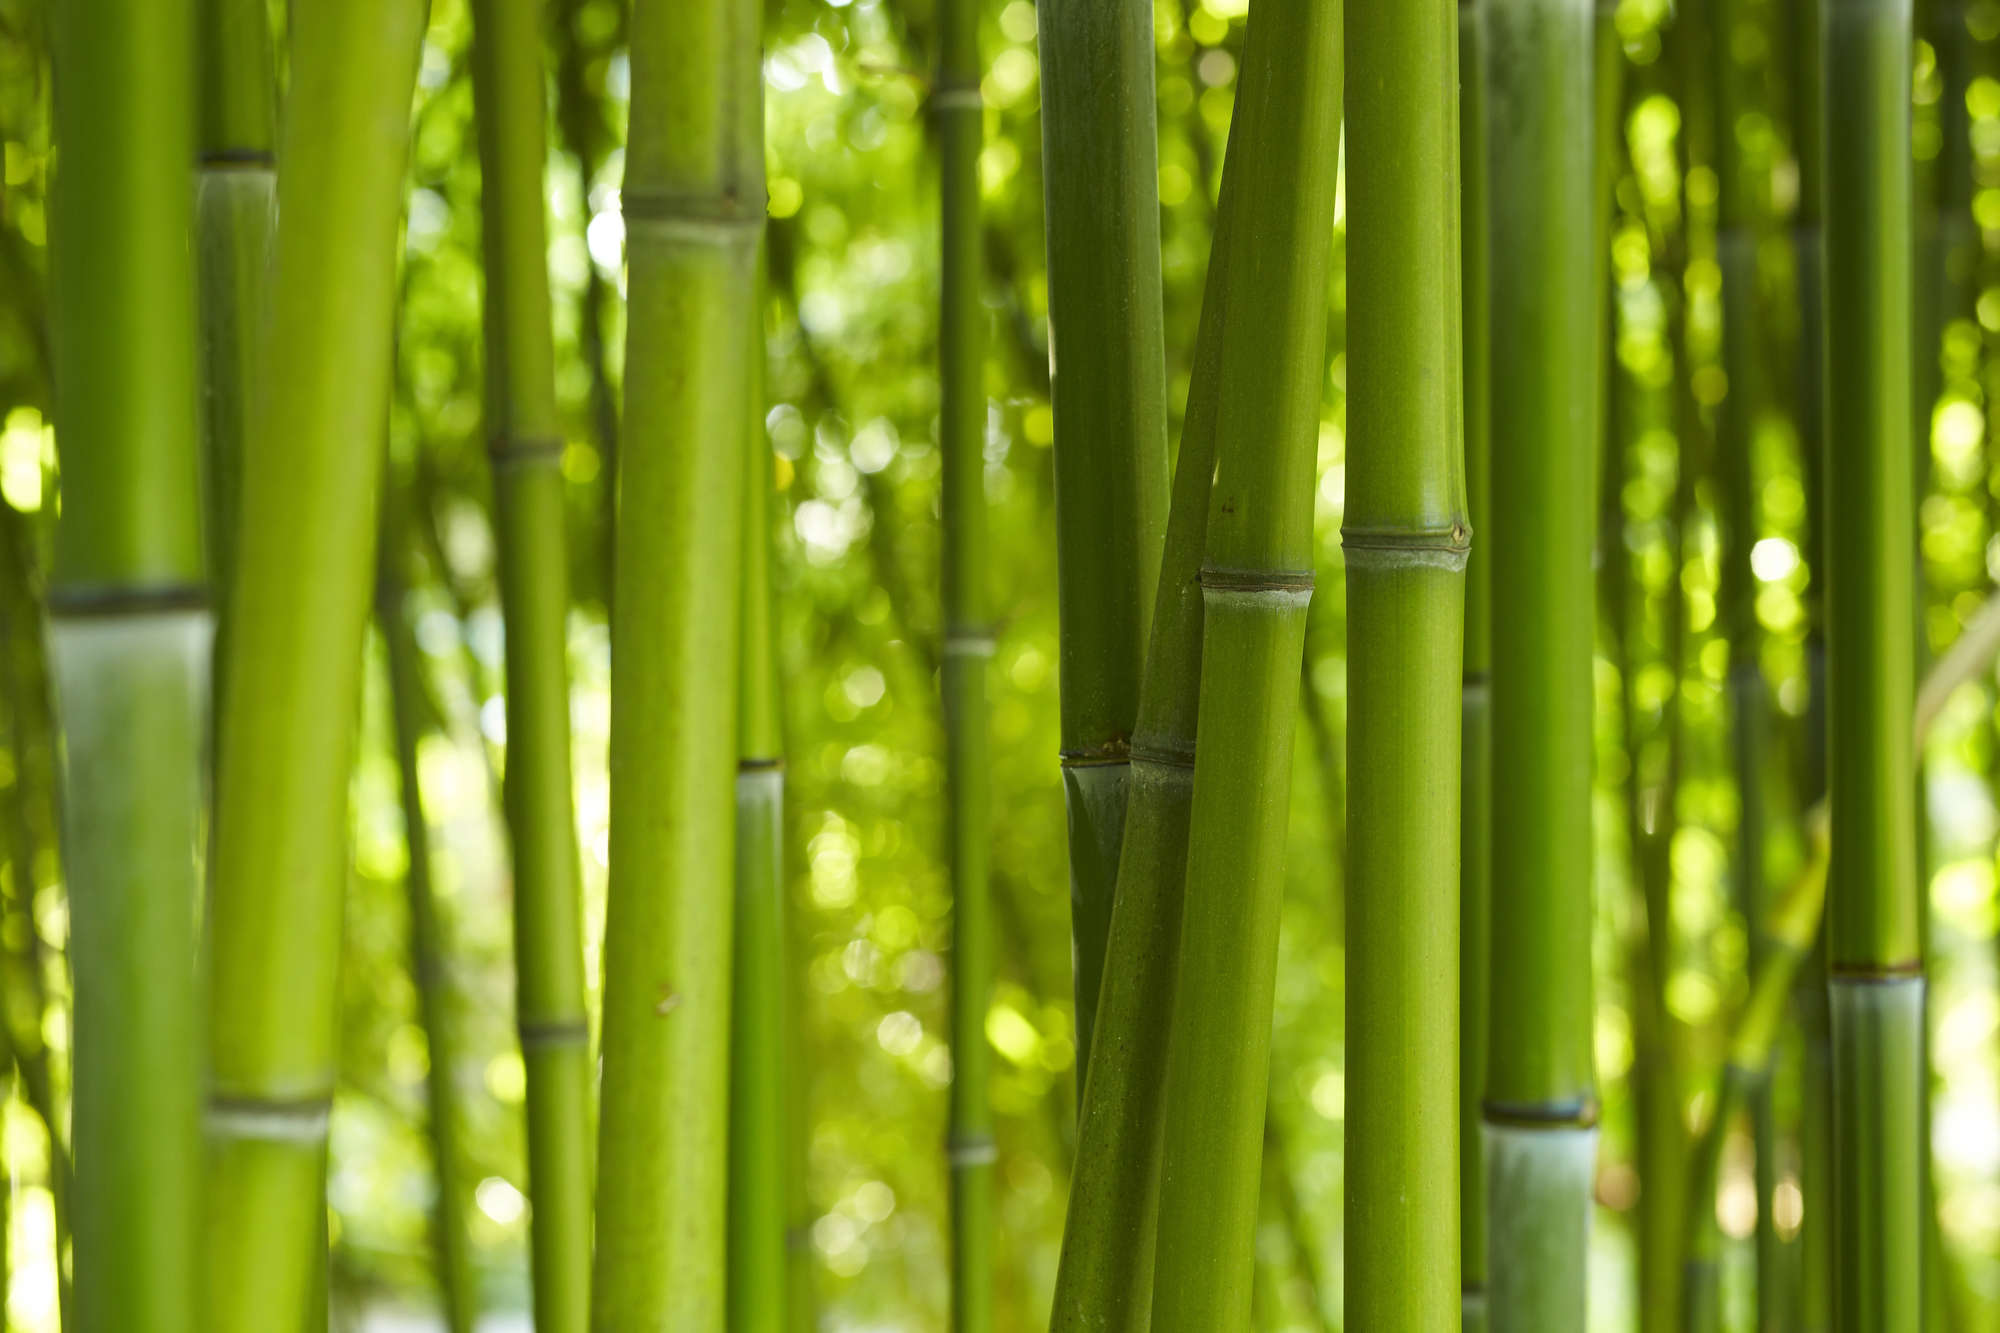             Papier peint nature Bambou gros plan sur intissé nacré lisse
        